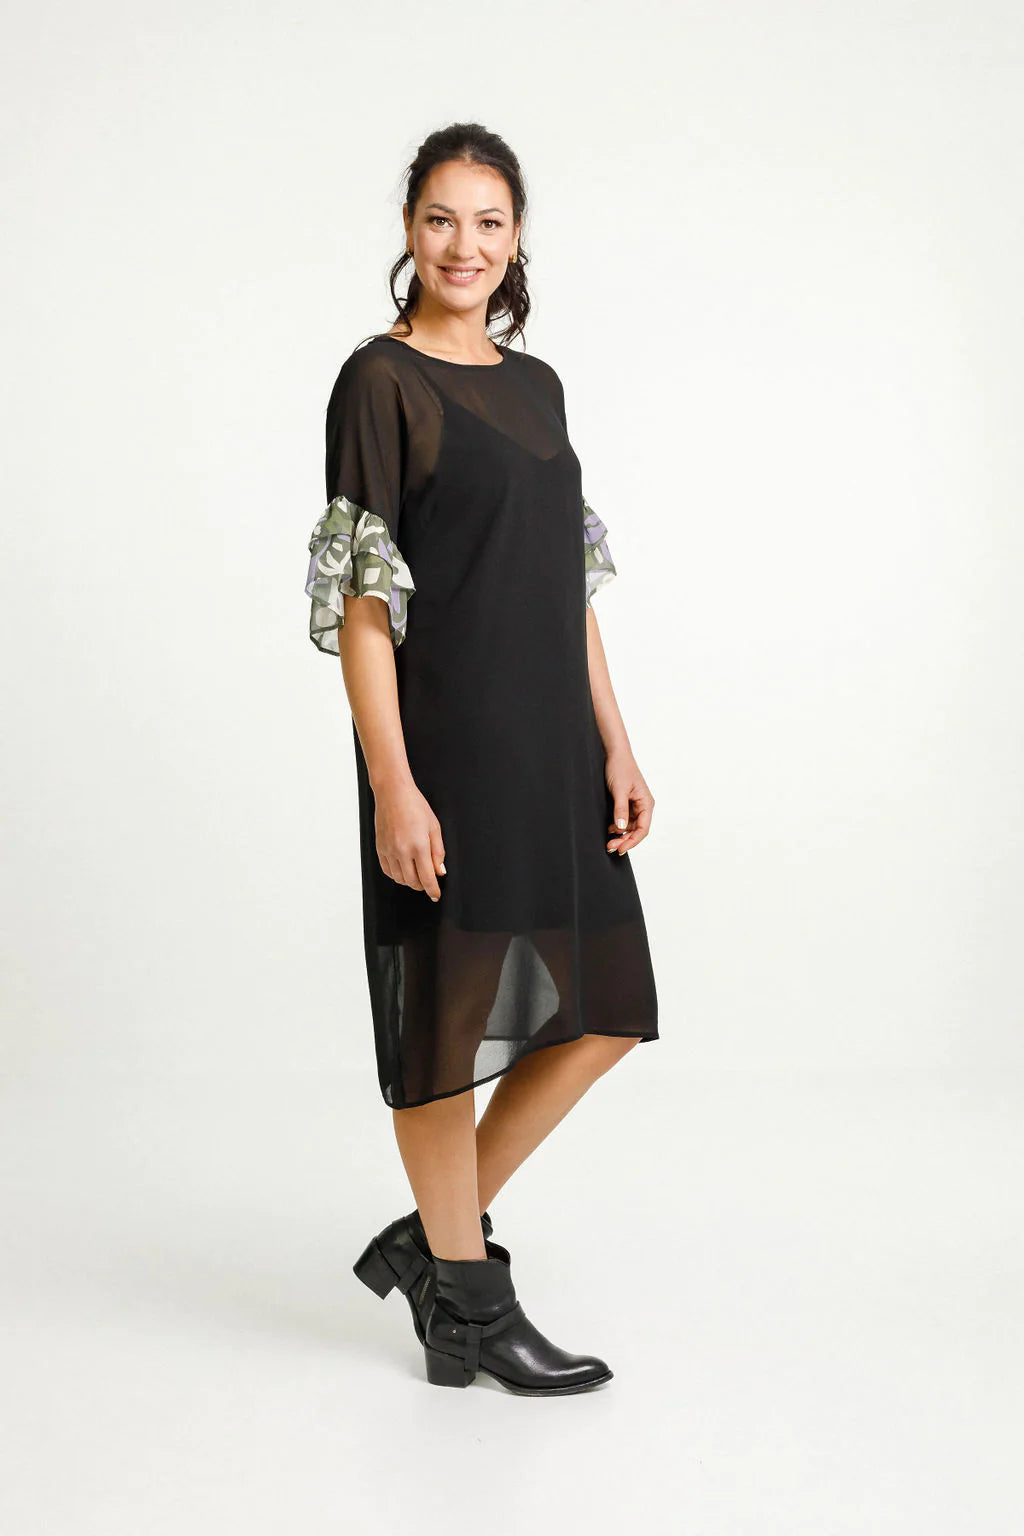 Home-Lee | Black/Meta Floral with Black Slip Imogen Dress